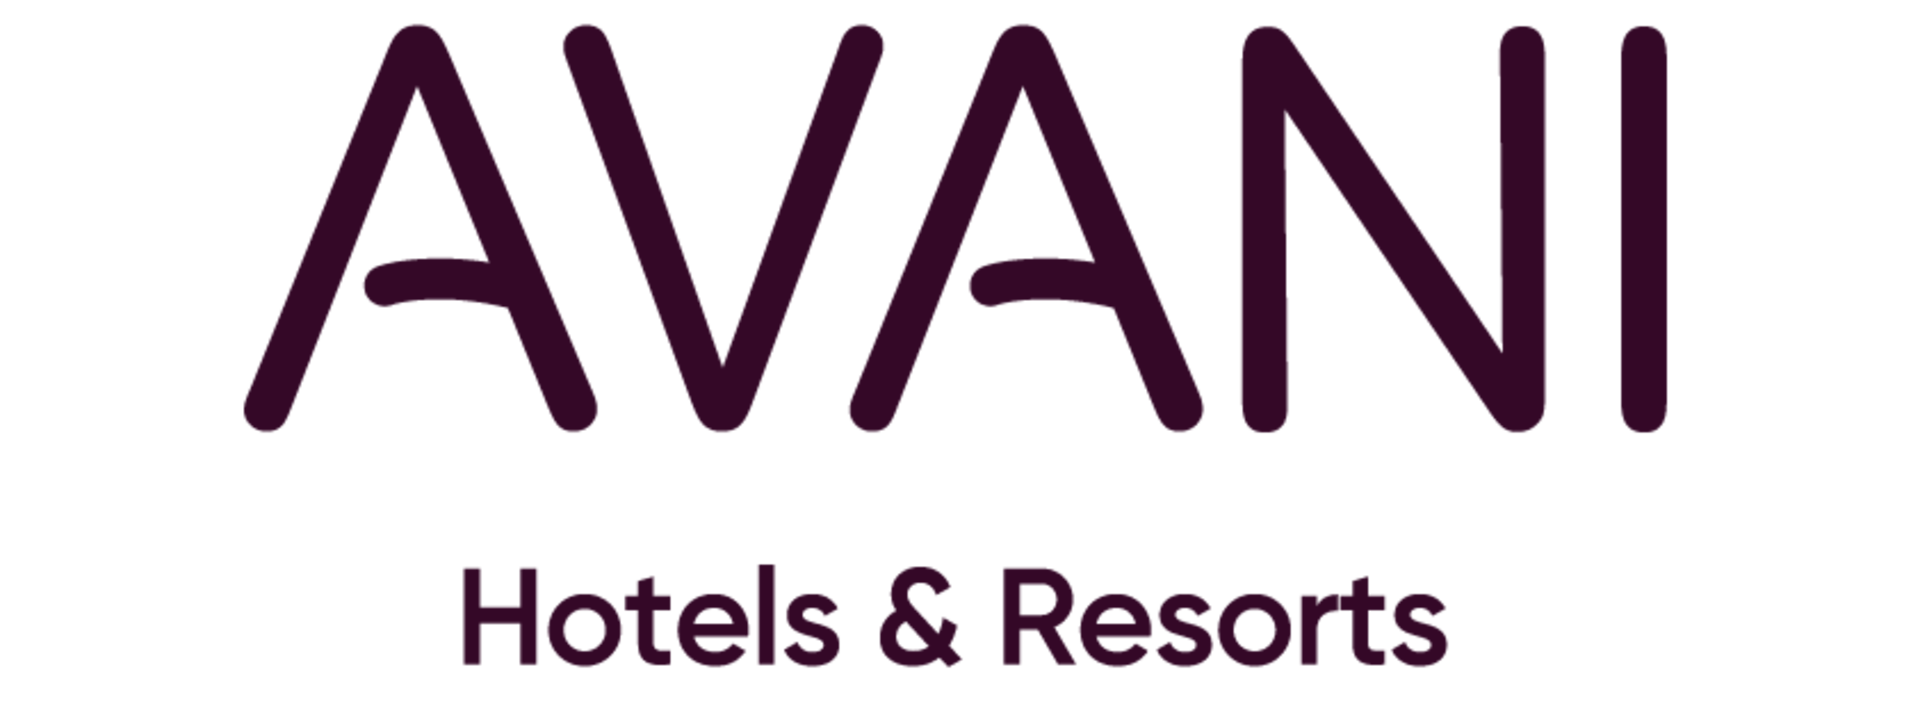 avani-hotelsresorts-c.png